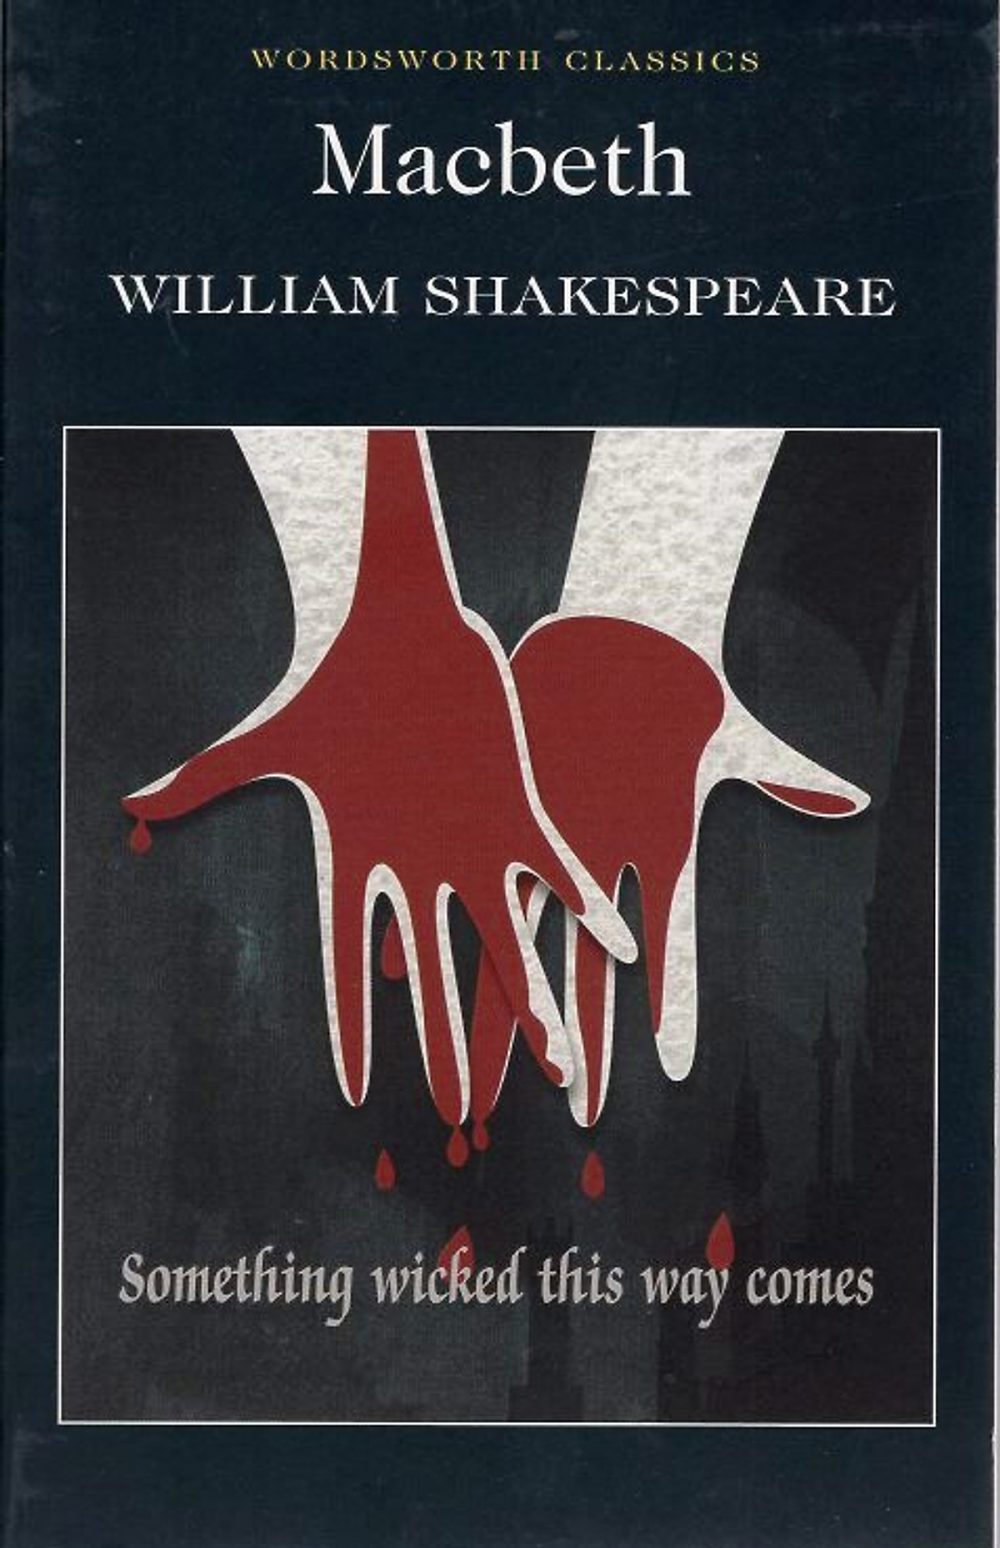 macbeth e1600147983444 - William Shakespeare: Người gửi ước mơ qua từng vở kịch